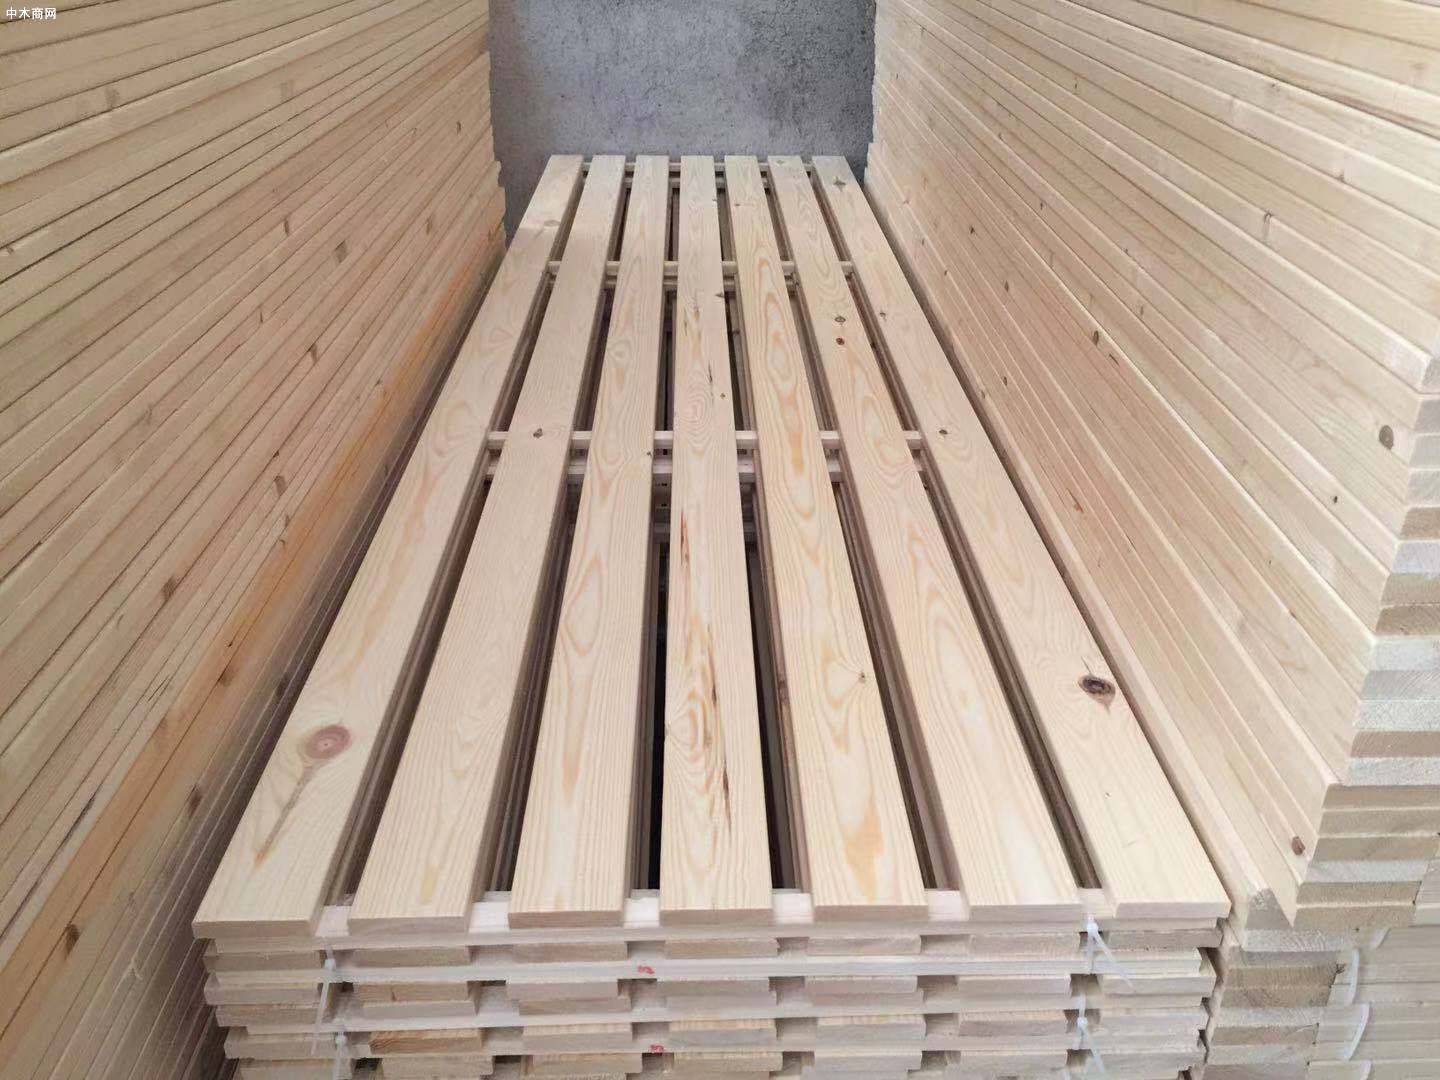 太仓市木材企业有序恢复生产